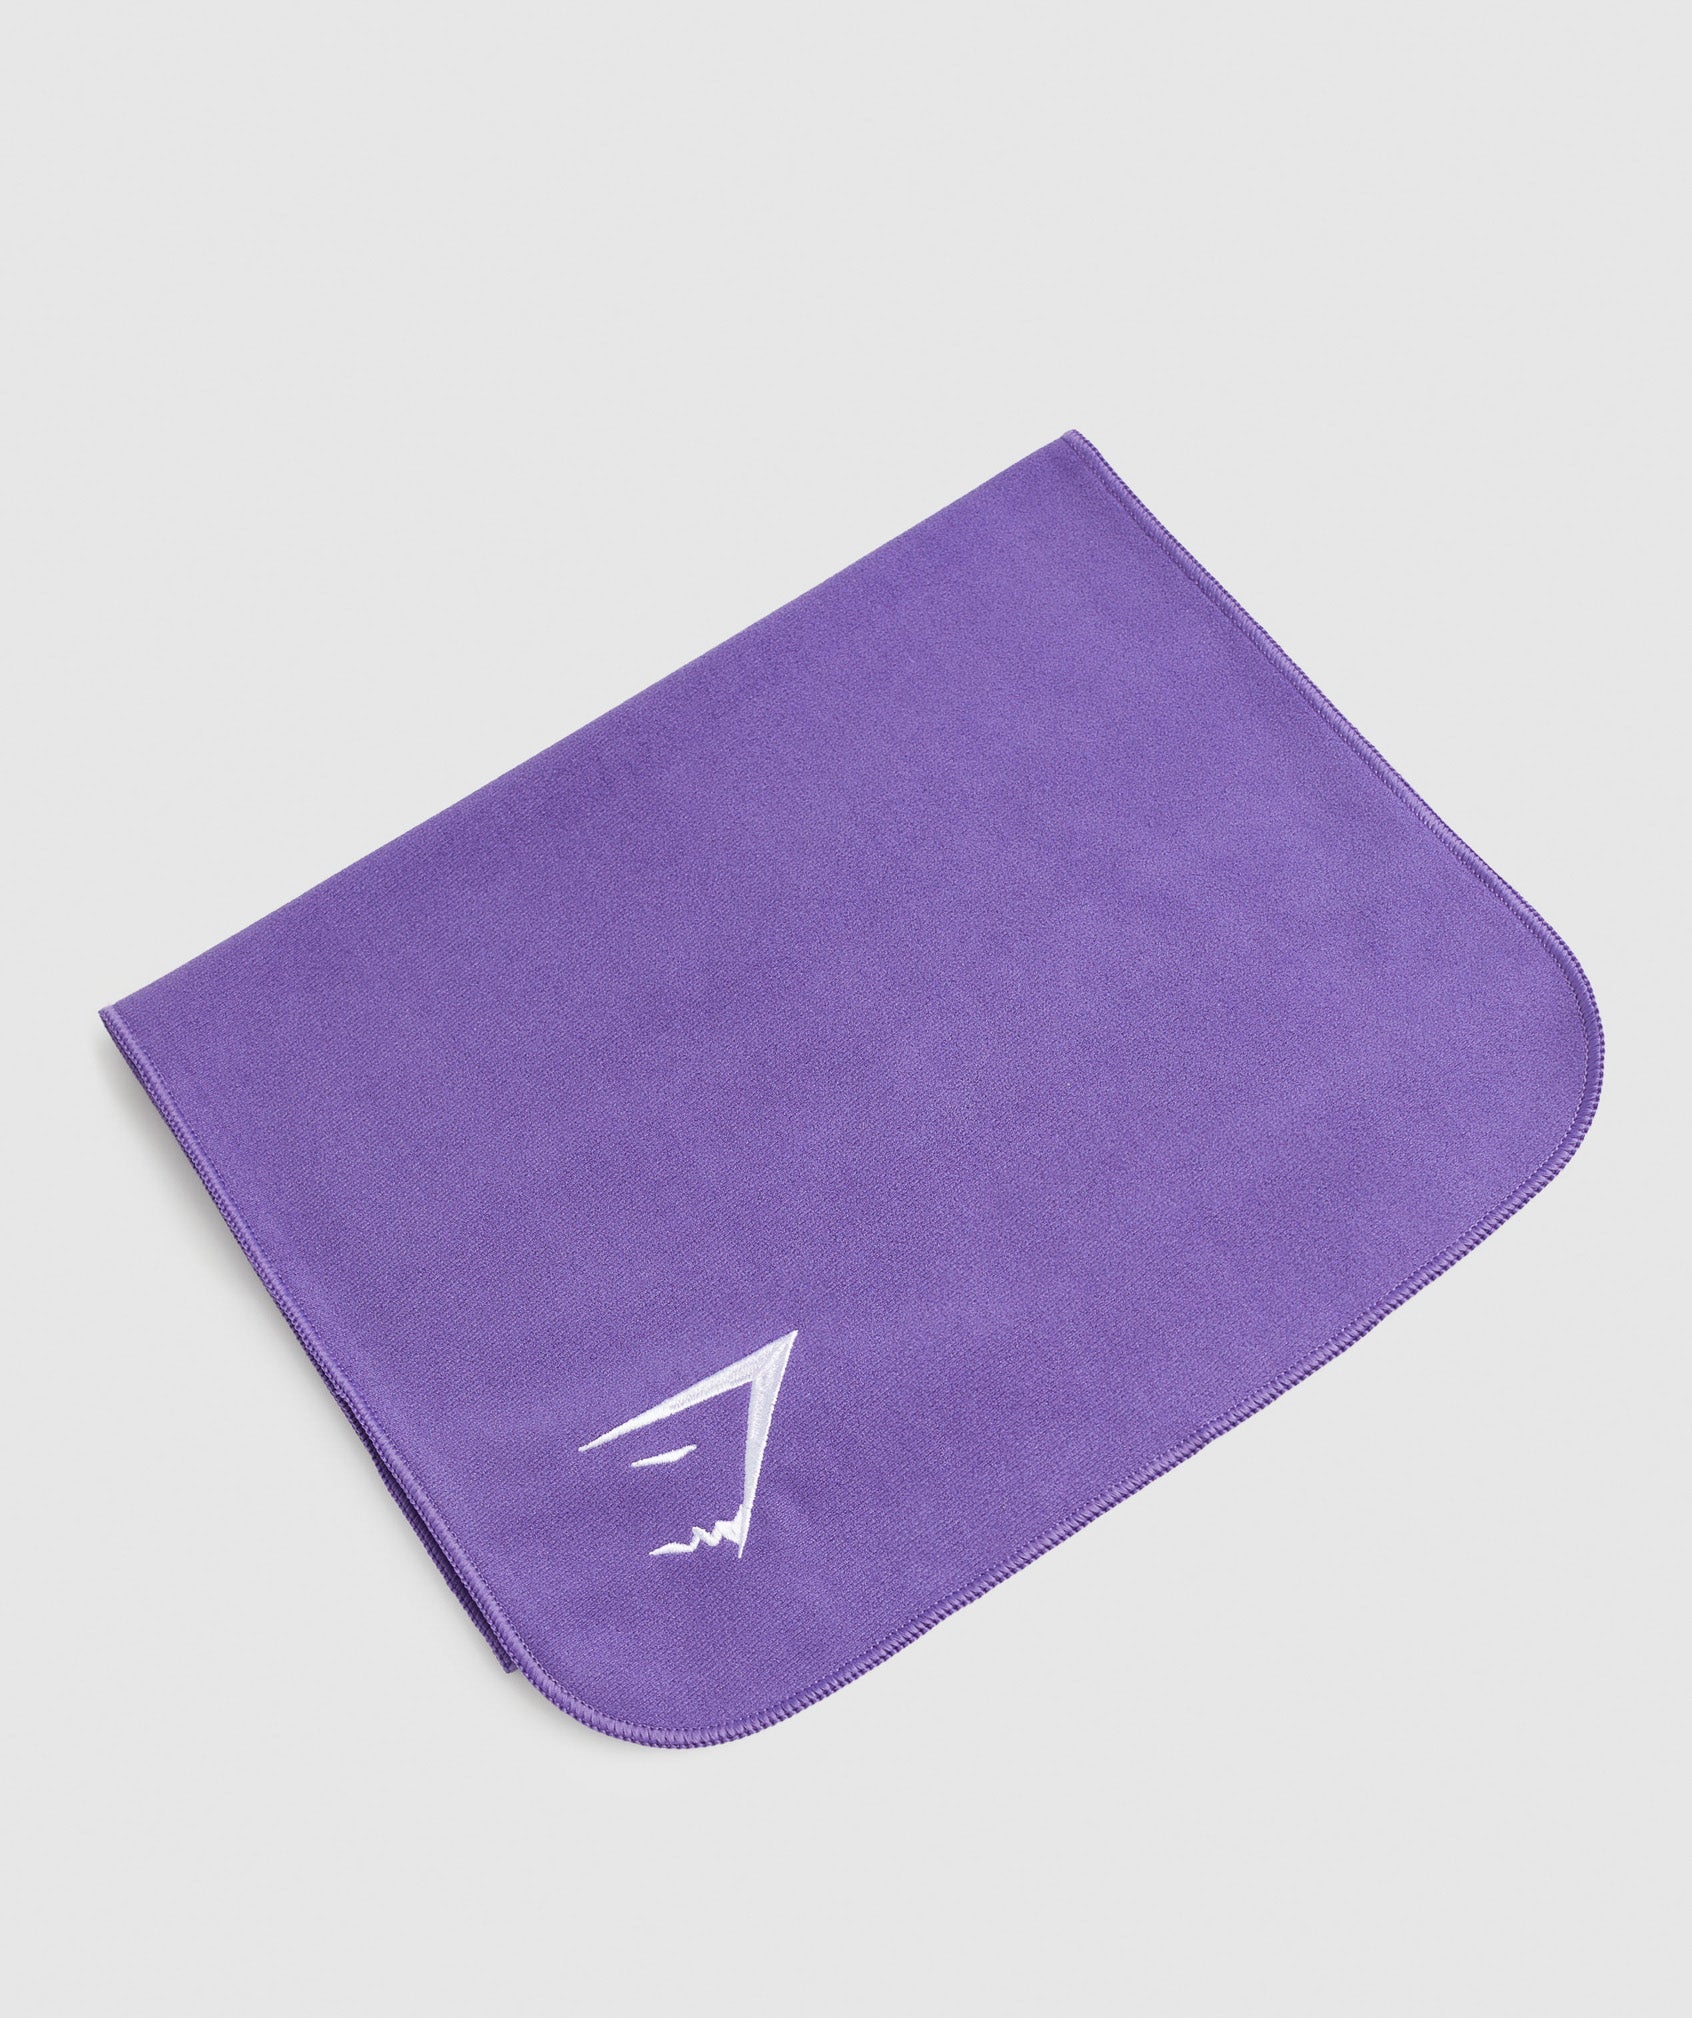 Sweat Towel in Stellar Purple